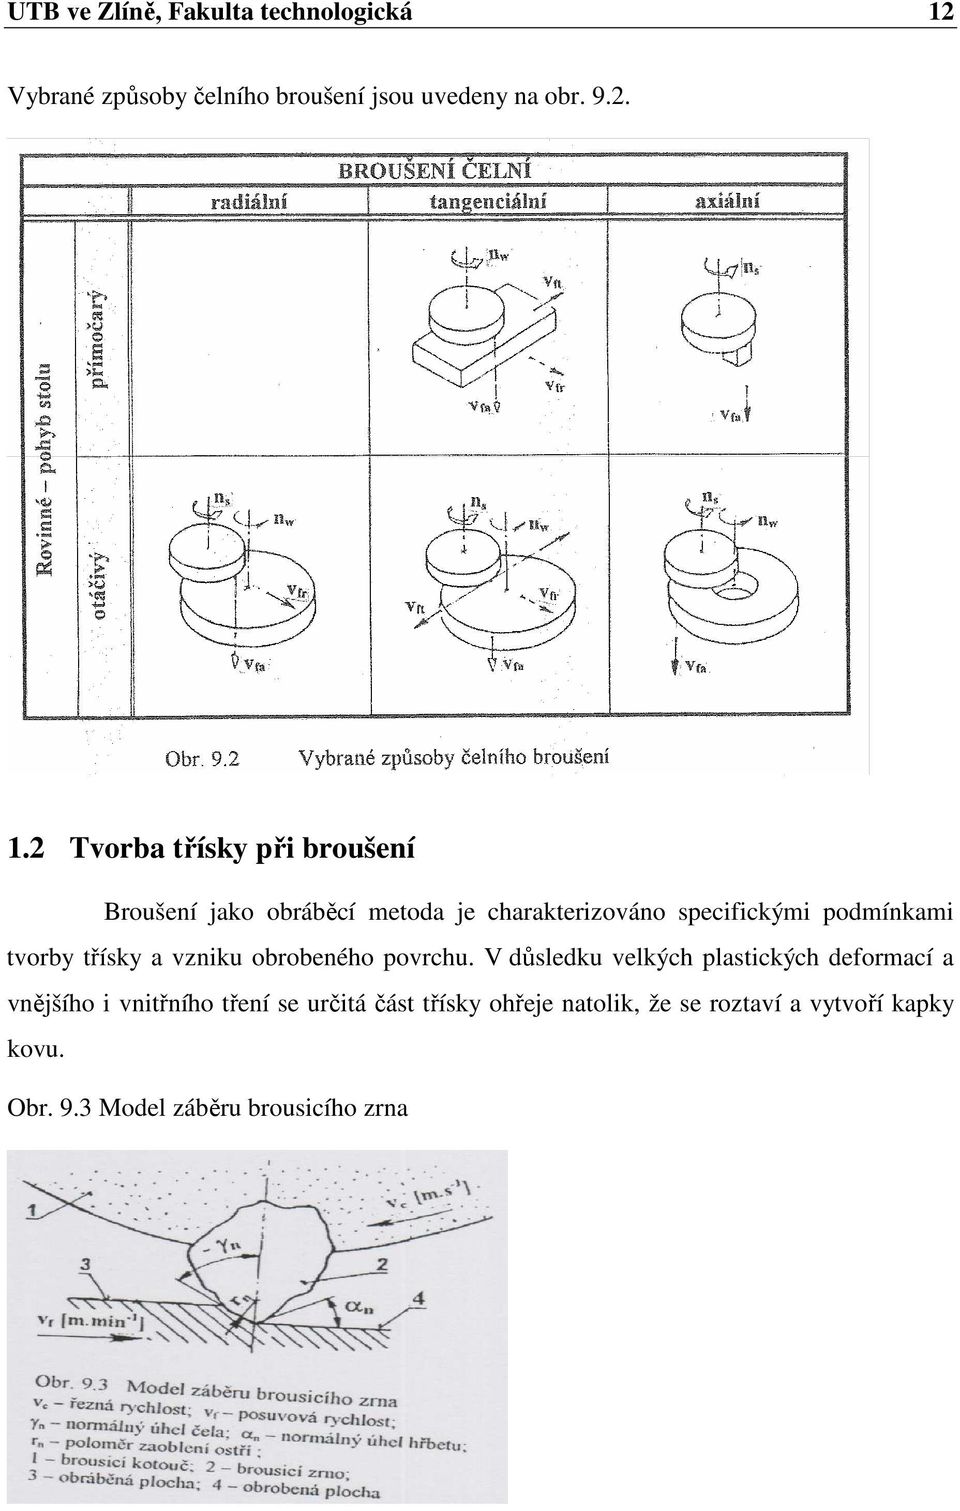 2 Tvorba třísky při broušení Broušení jako obráběcí metoda je charakterizováno specifickými podmínkami